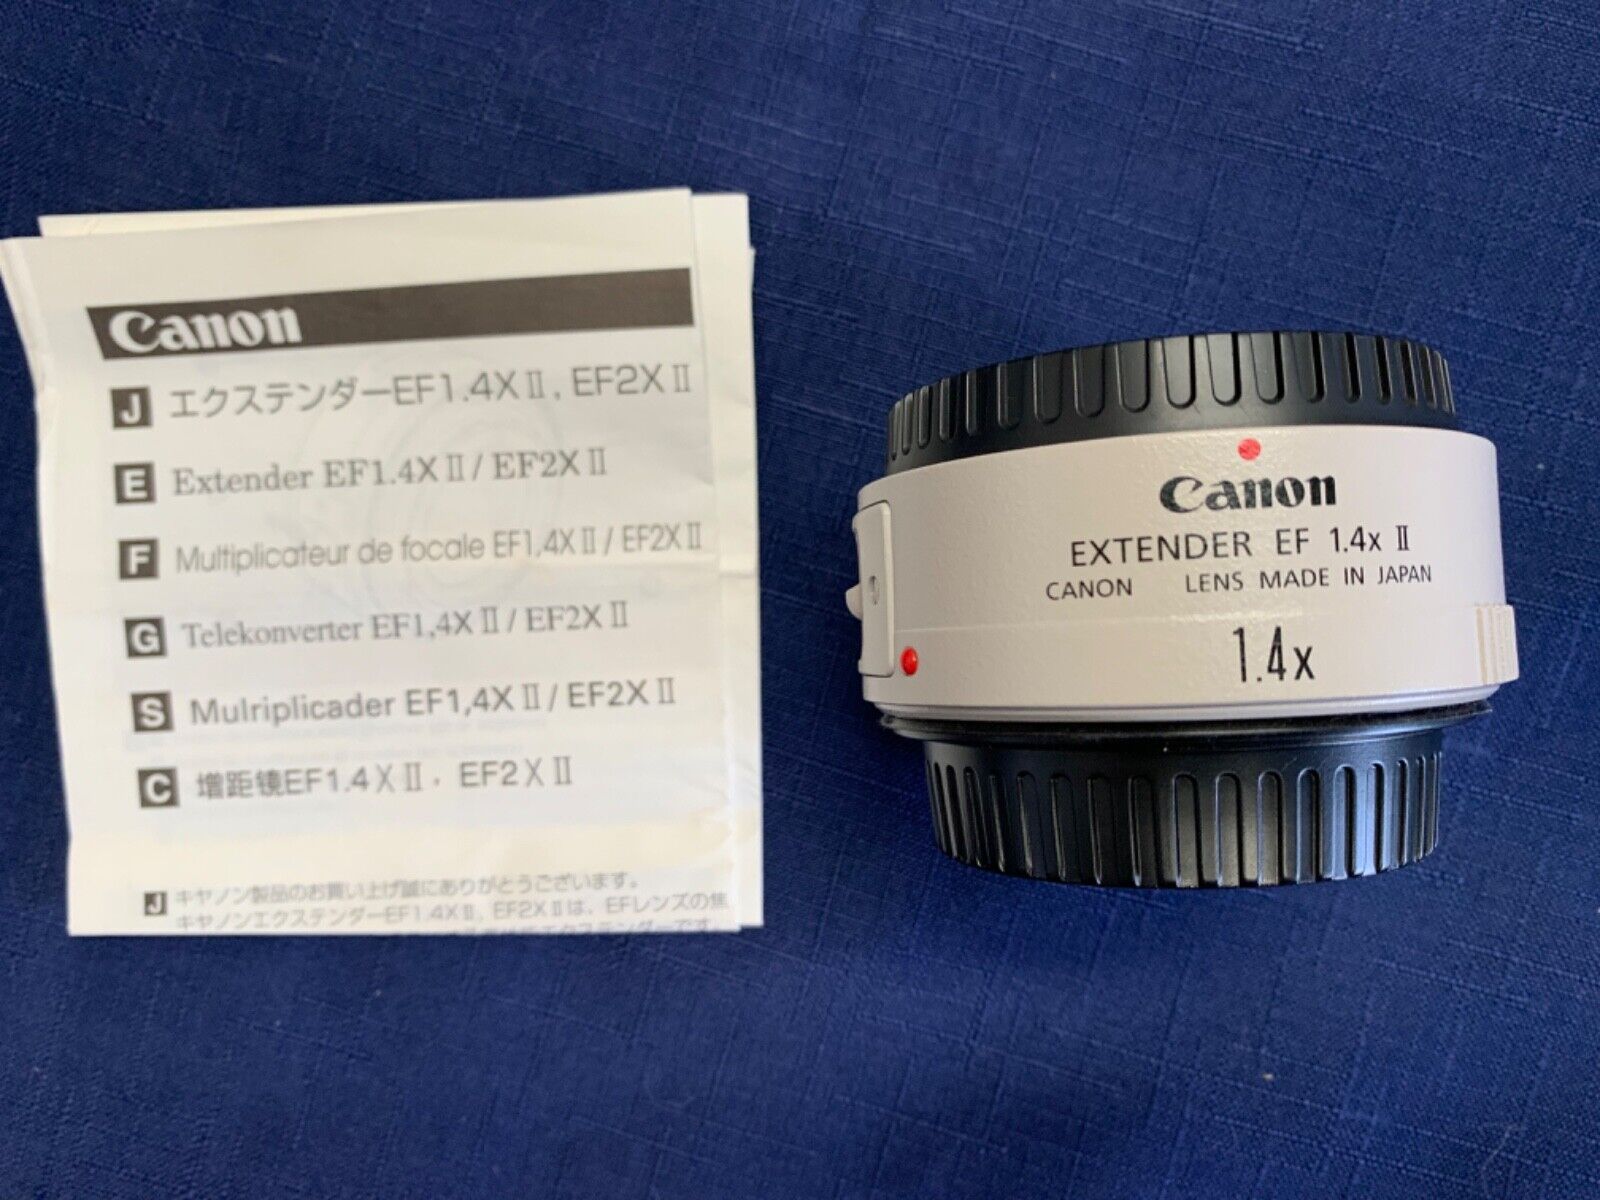 ライトブラウン/ブラック canonキャノン エクステンダー EF1.4X II